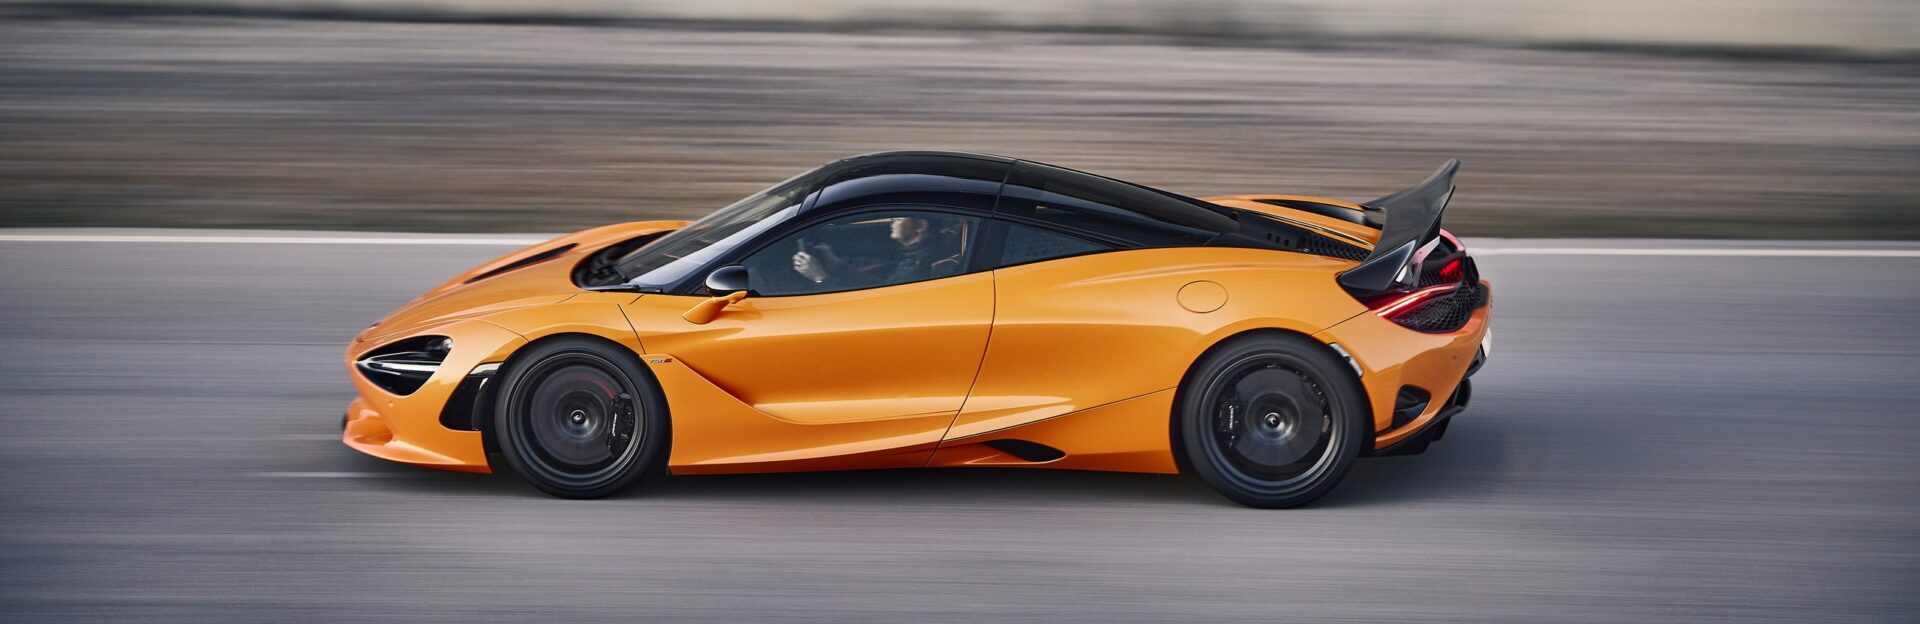 Новый McLaren 750S разогнался до скорости более 320 километров в час на закрытой трассе в Айдахо